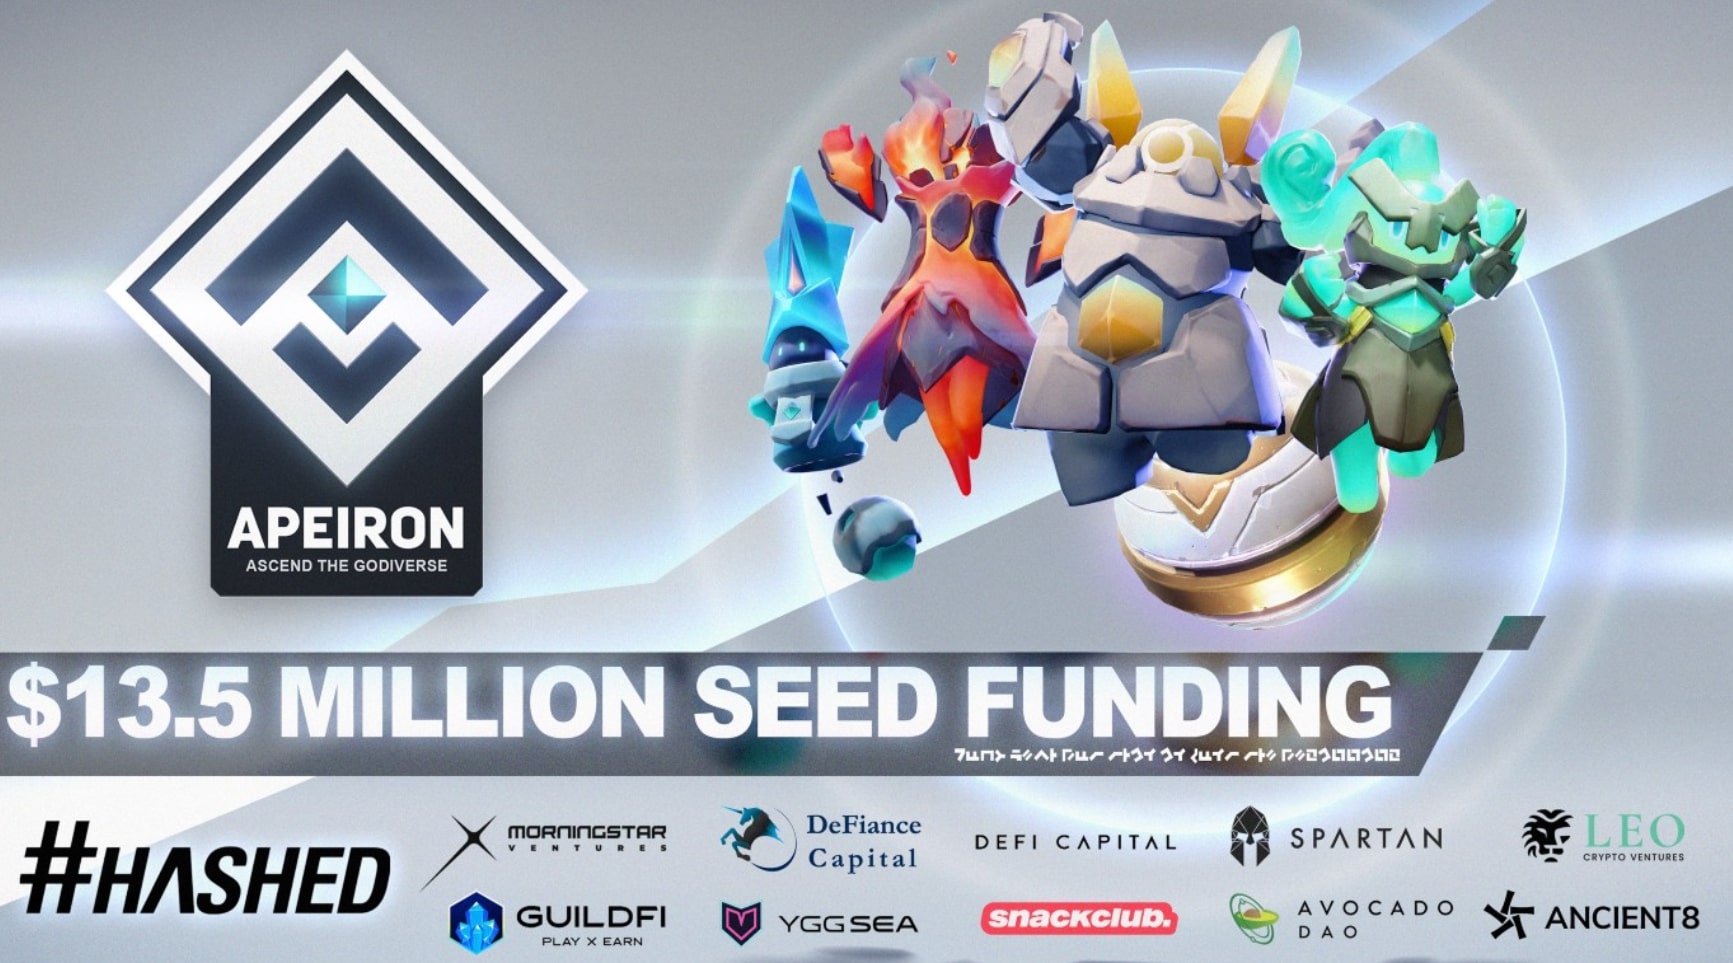 Apeiron seed funding